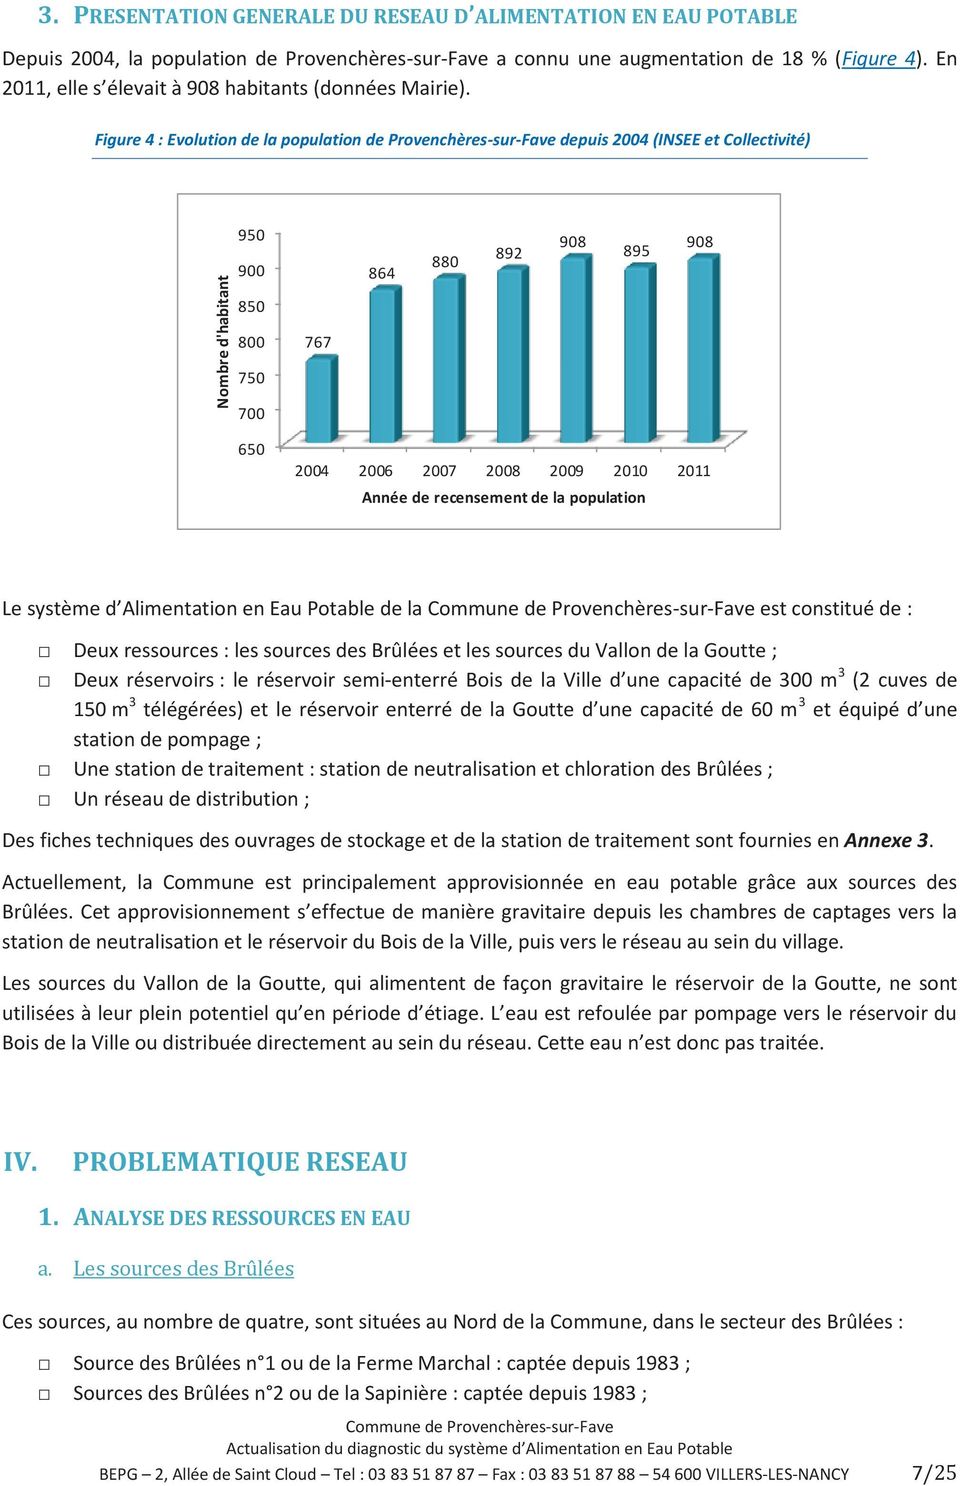 Figure 4 : Evolution de la population de Provenchères-sur-Fave depuis 2004 (INSEE et Collectivité) Nombre d'habitant 950 900 850 800 750 700 767 864 880 892 908 895 908 650 2004 2006 2007 2008 2009